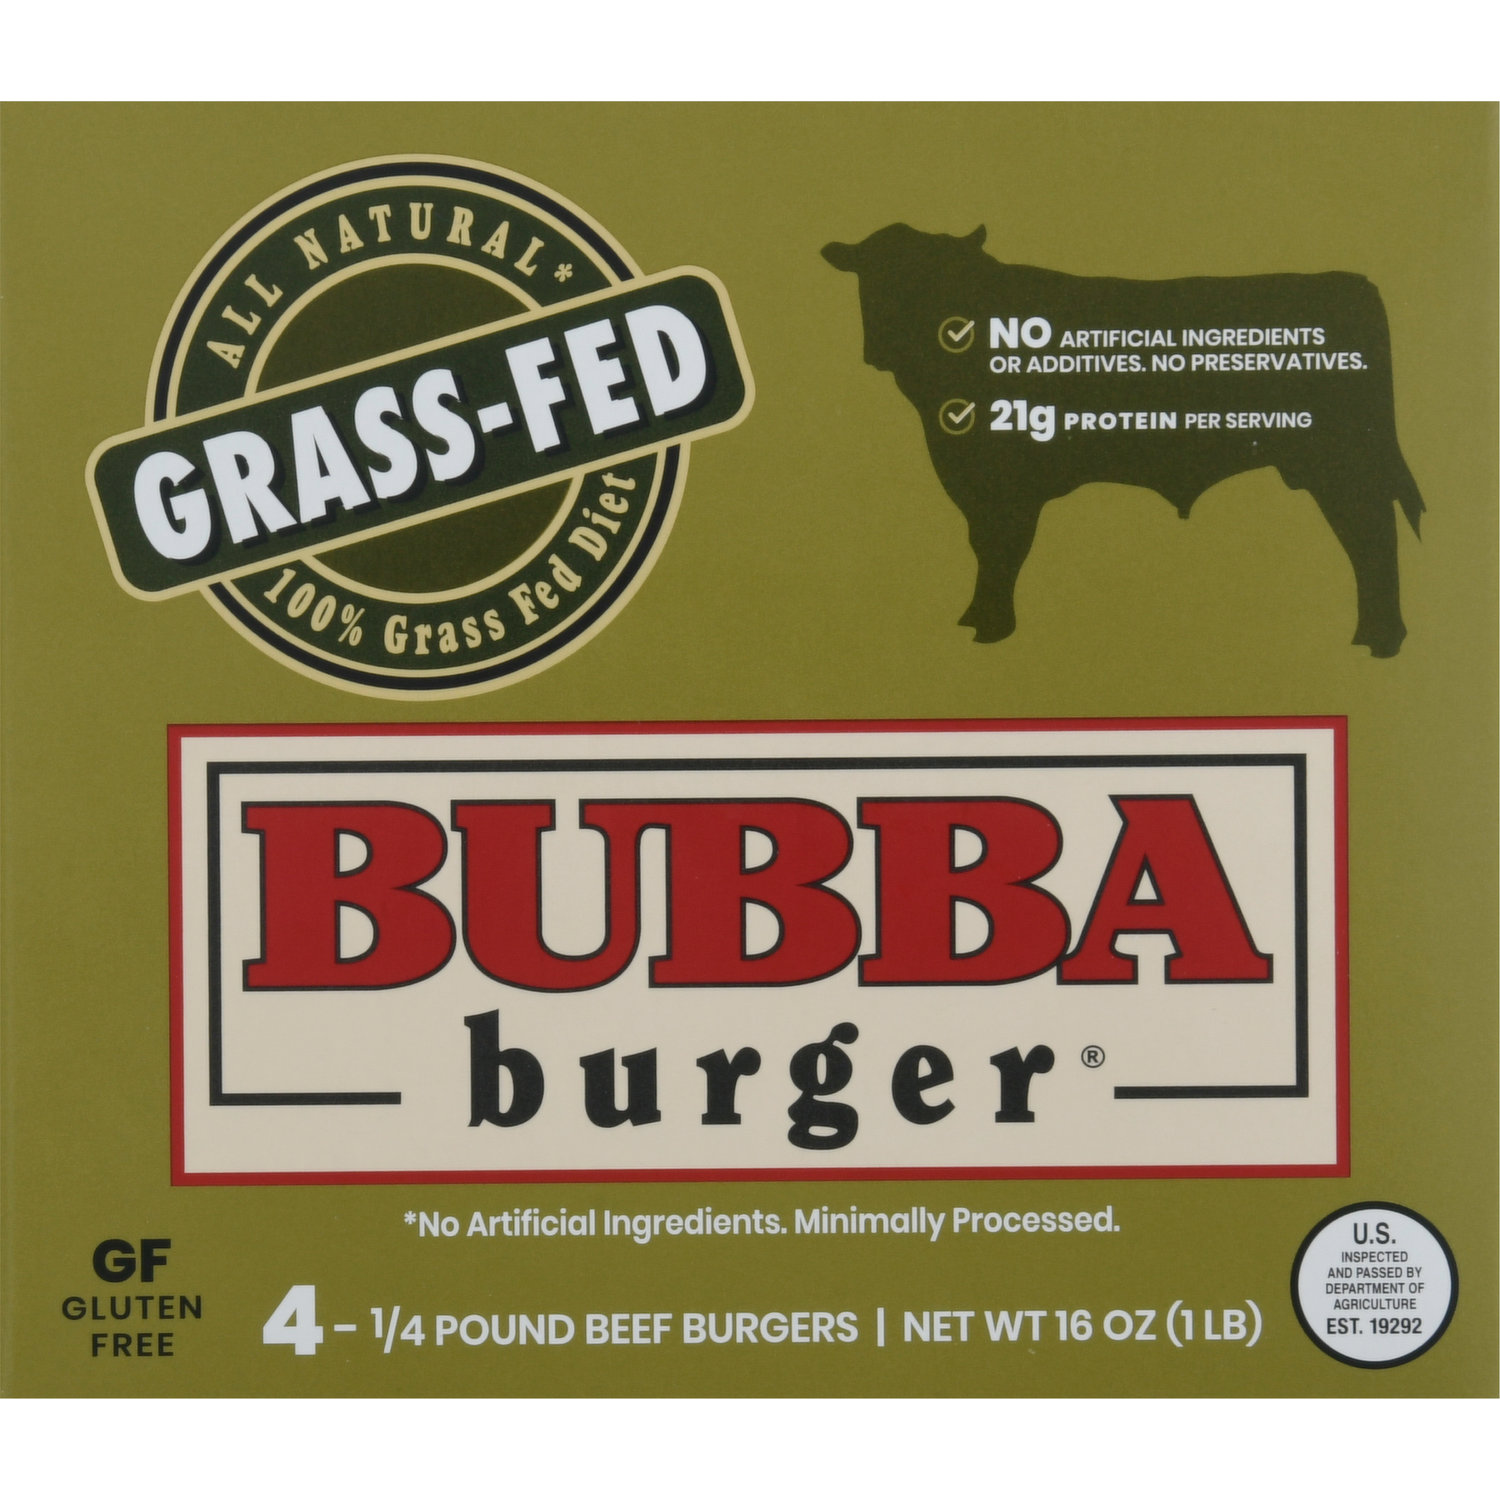 BUBBA Burger, All Natural BUBBA Burger